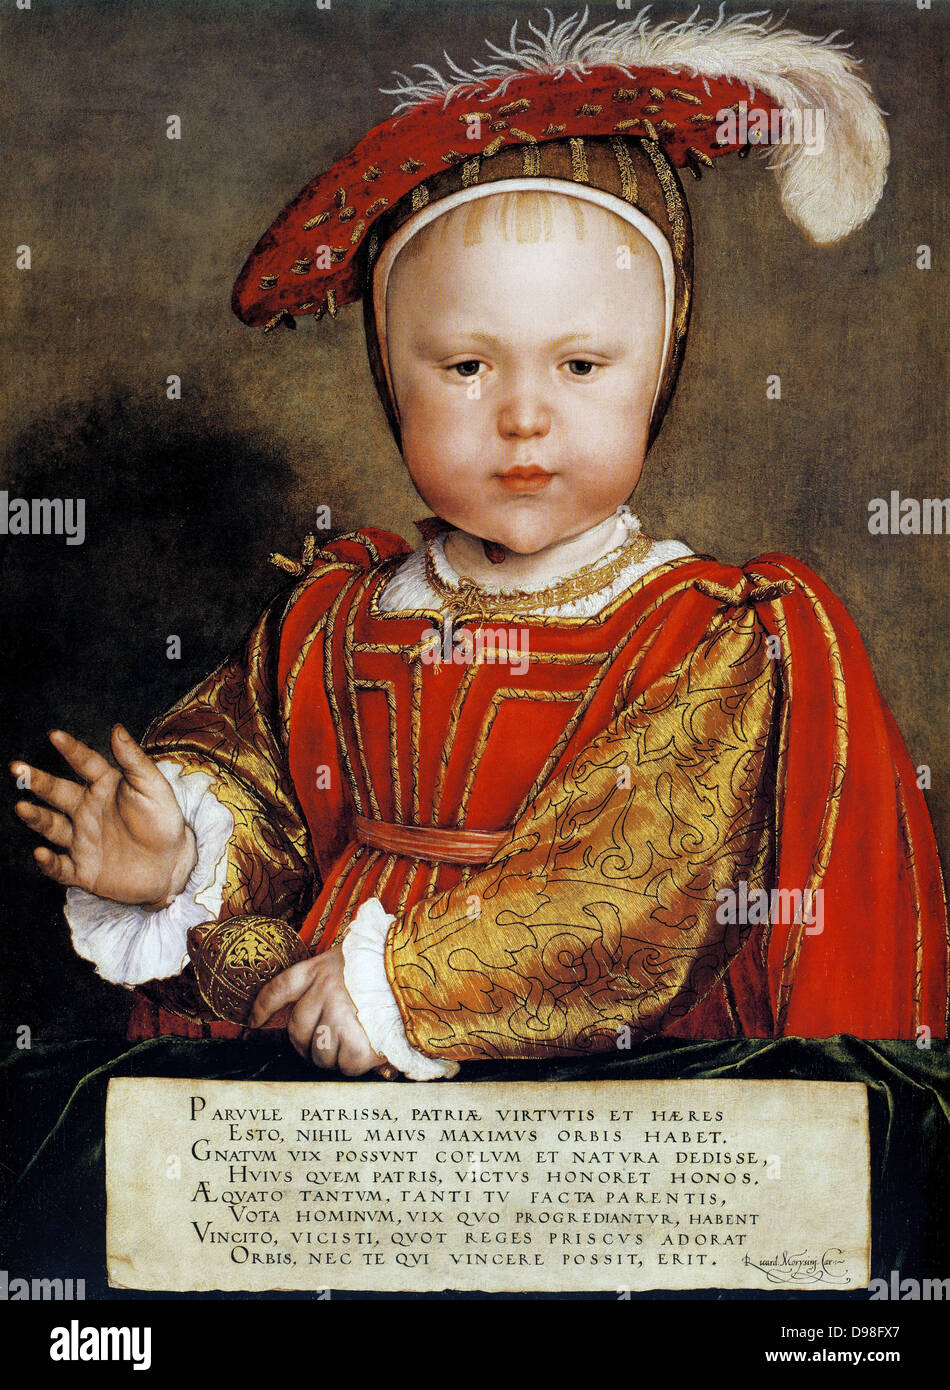 Eduard VI. (1537-1553) König von England und Irland von 1547. Sohn von Heinrich VIII. und seiner dritten Frau Jane Seymour. Immer ein kränkliches Kind, er starb eines natürlichen Todes. Porträt von Holbein. Stockfoto